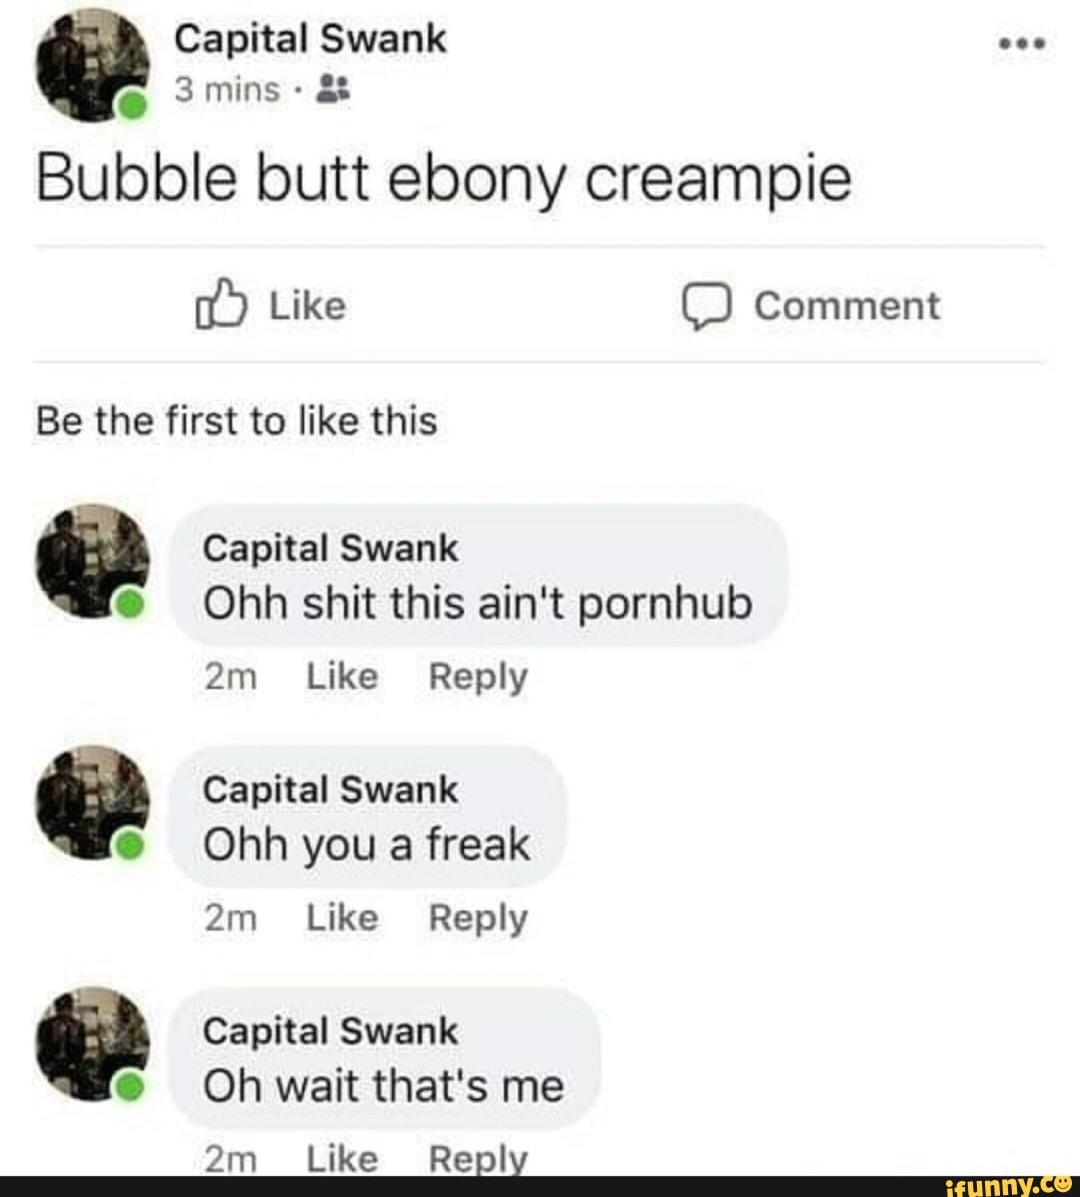 Bubble butt freaks